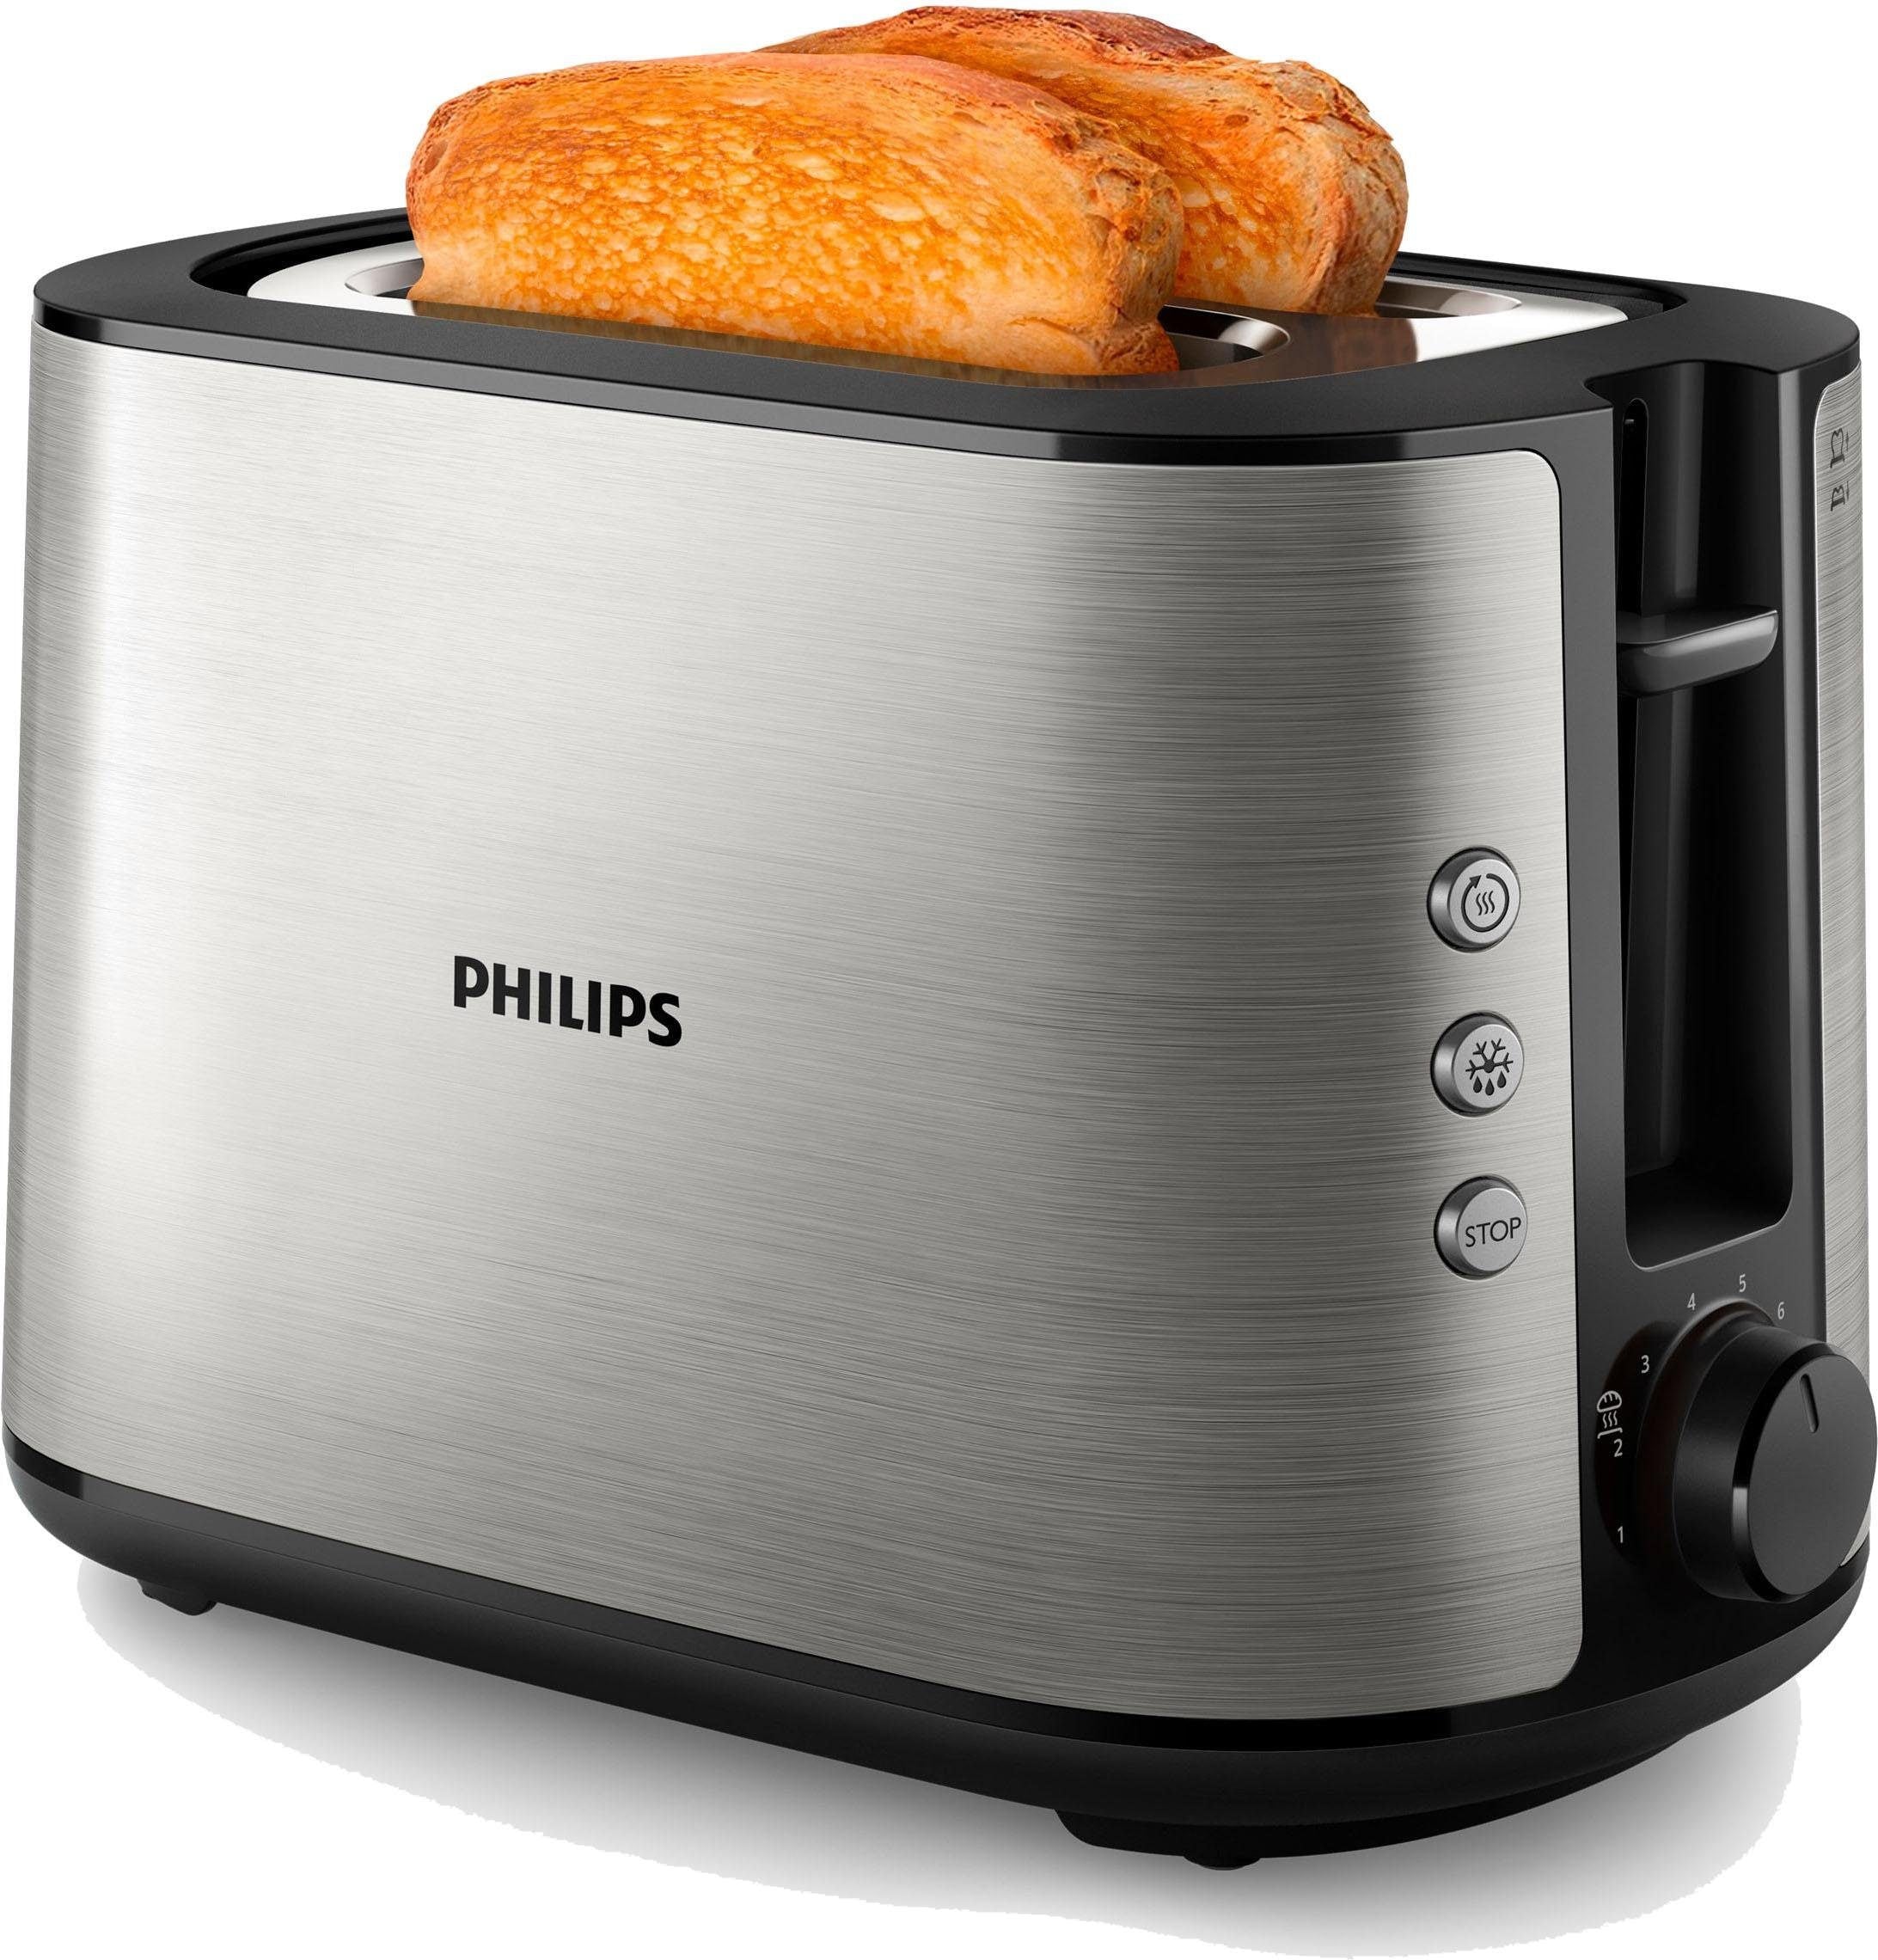 Schlitze, 950 Philips »HD2650/90«, 2 kurze Scheiben, Toaster Online-Shop W kaufen im für 2